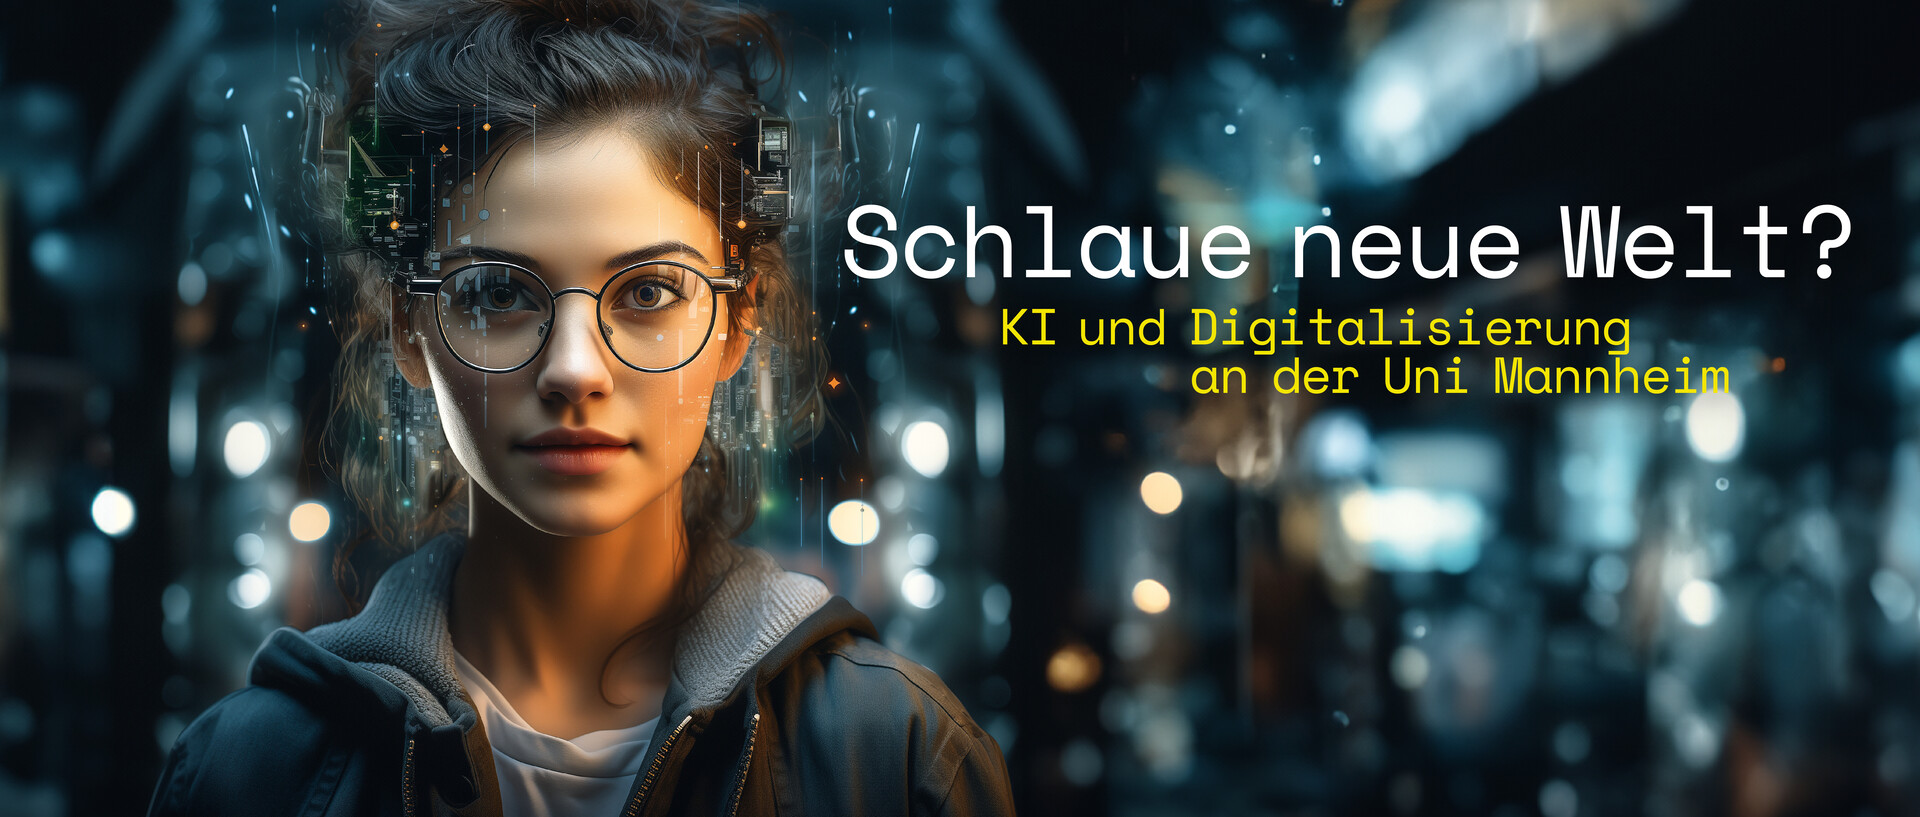 Eine Studentin mit Brille blickt freundlich in die Kamera. Text: Schlaue neue Welt? KI und Digitalisierung an der Uni Mannheim.